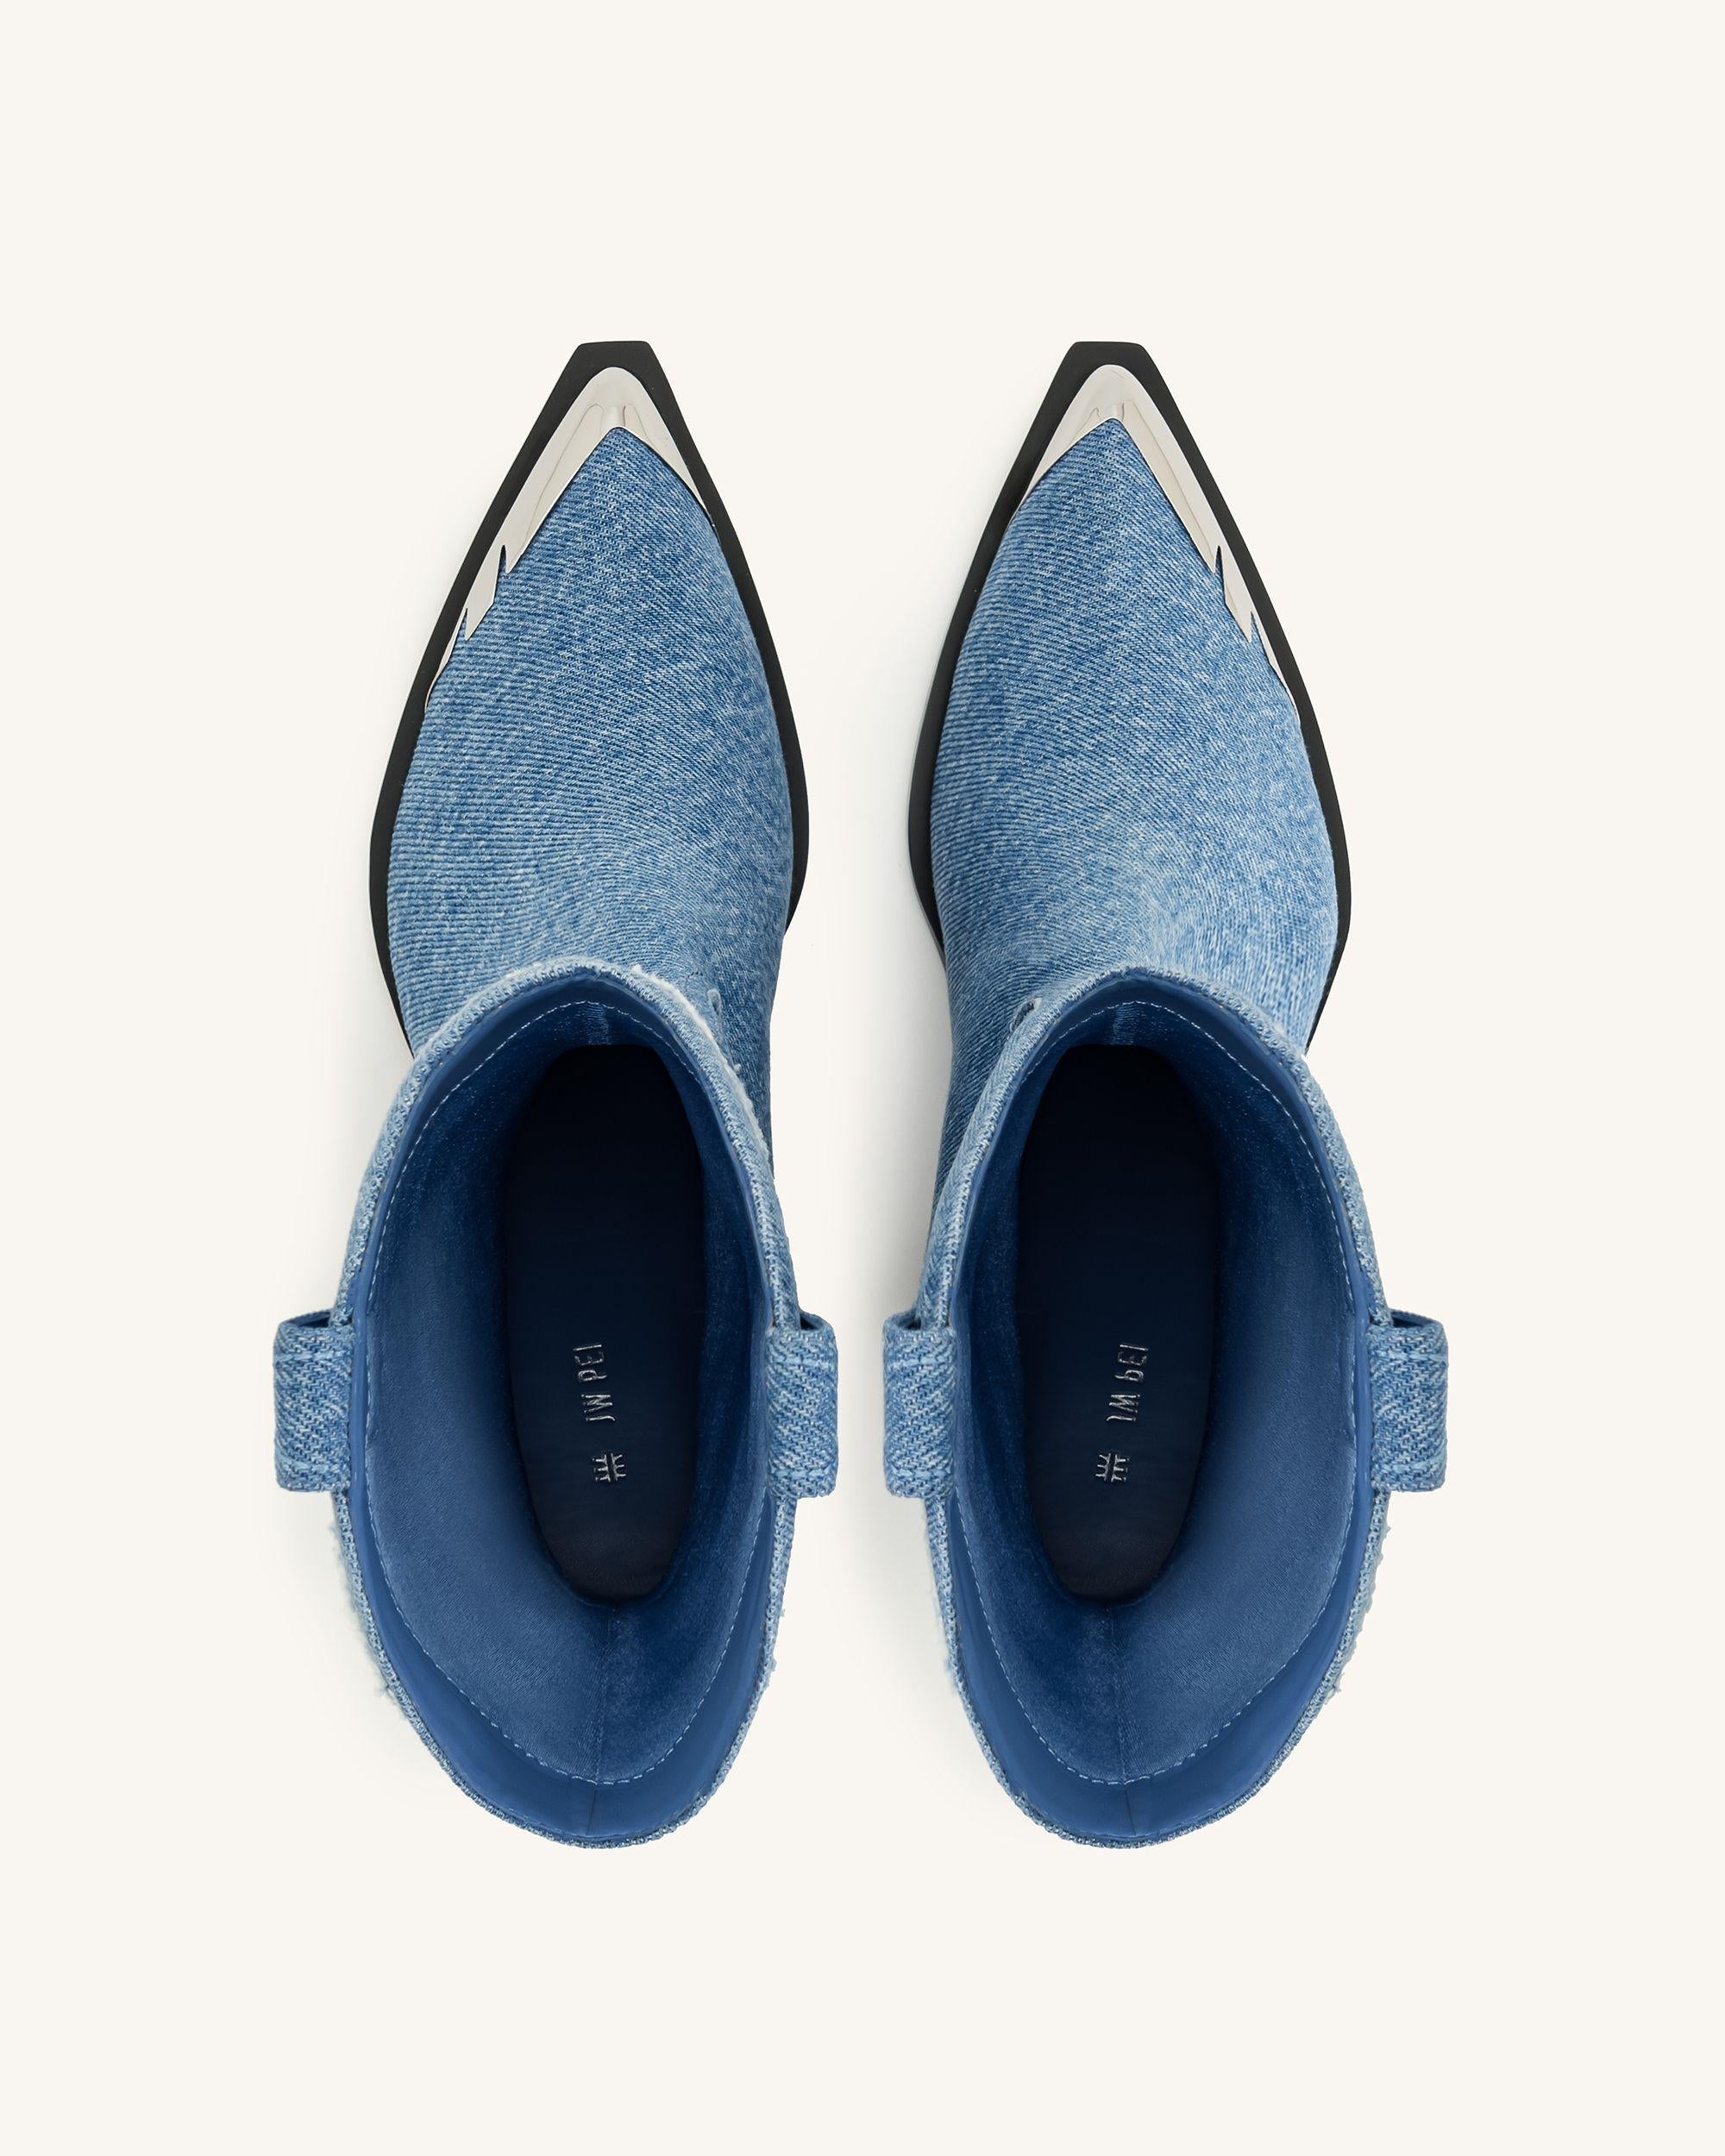 Riya 牛仔靴 - 藍色